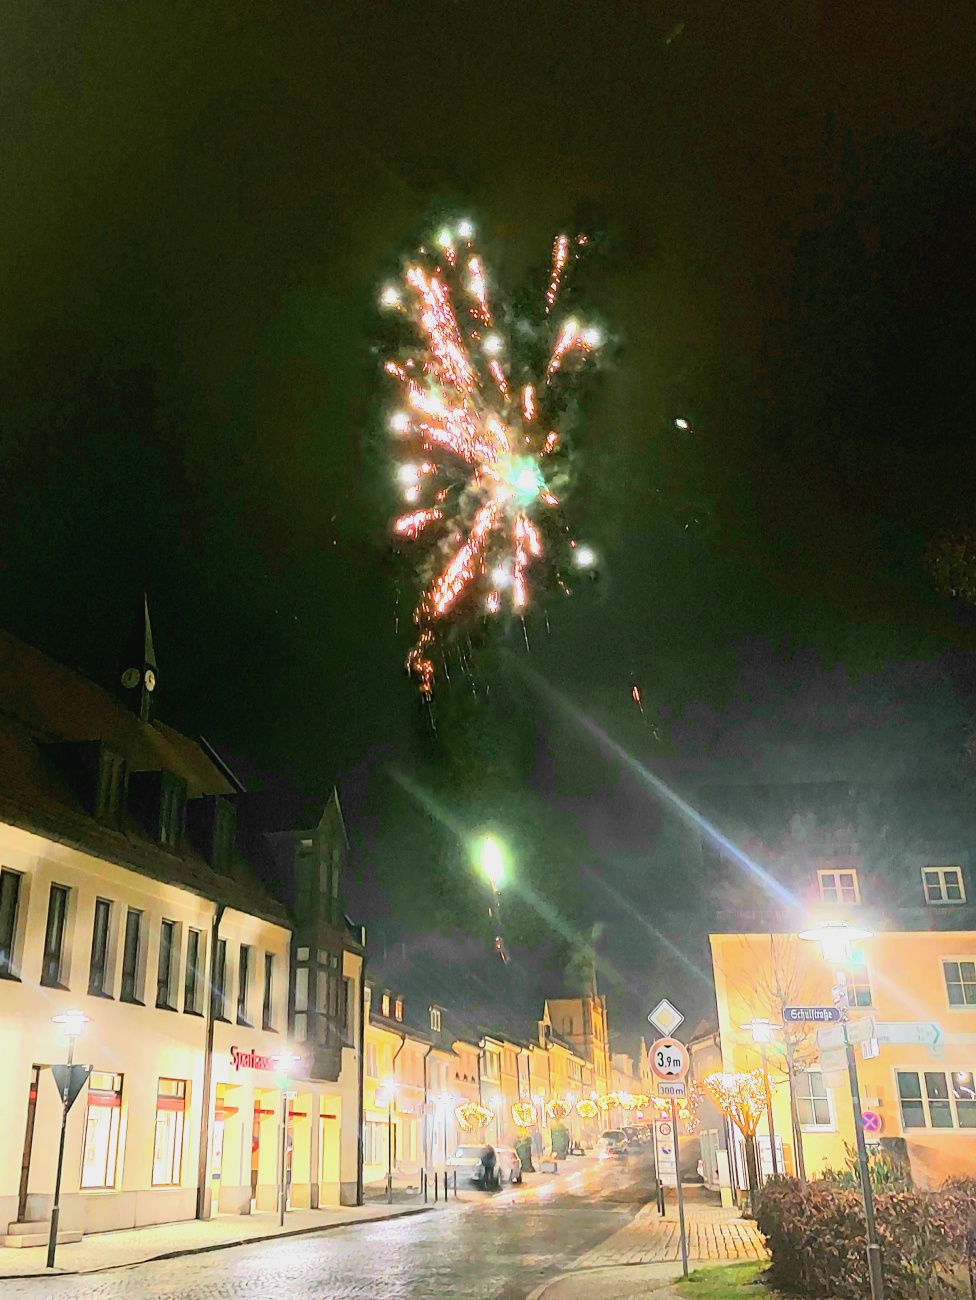 Foto: Martin Zehrer - Sylvester-Feuerwerk in Kemnath... es schreibt sich nun das Jahr 2022 